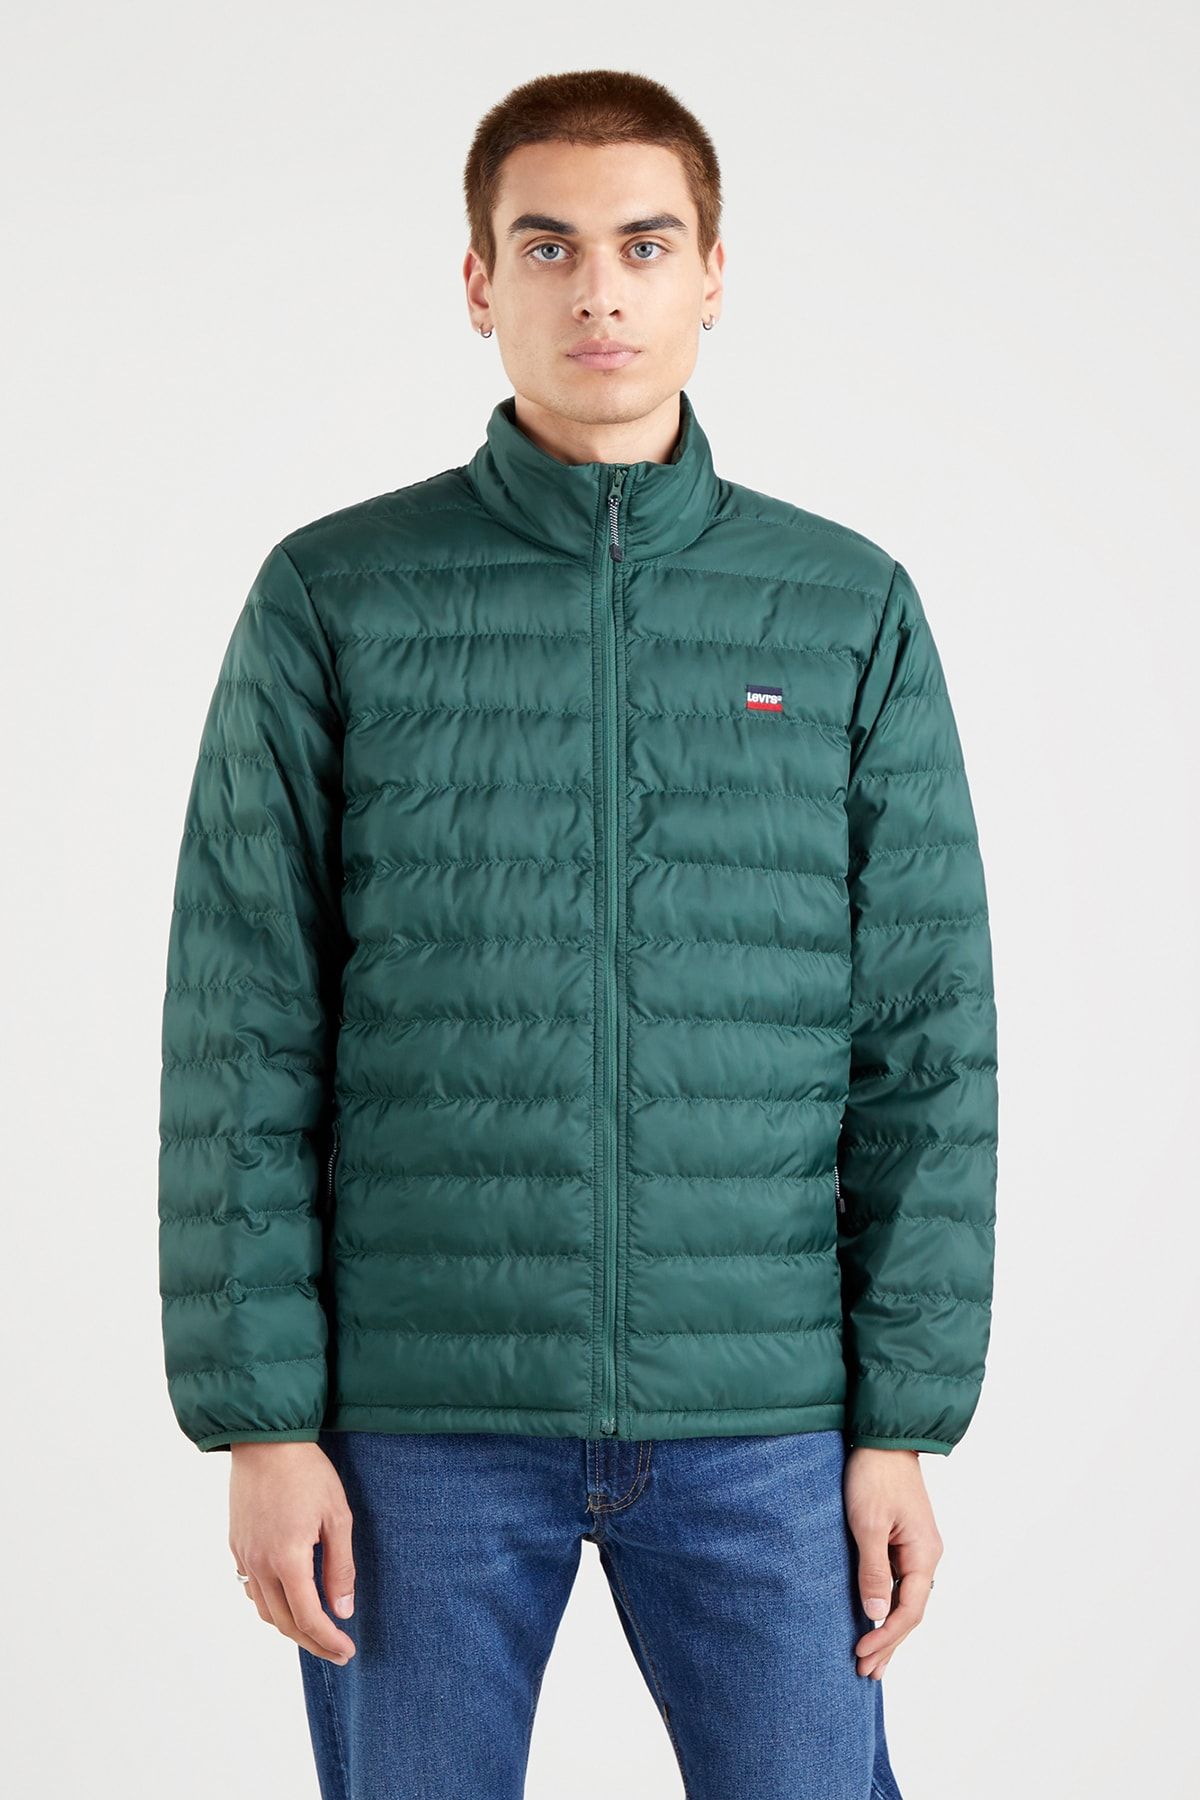 Levi's Winter Jacket - Green - Puffer - Trendyol